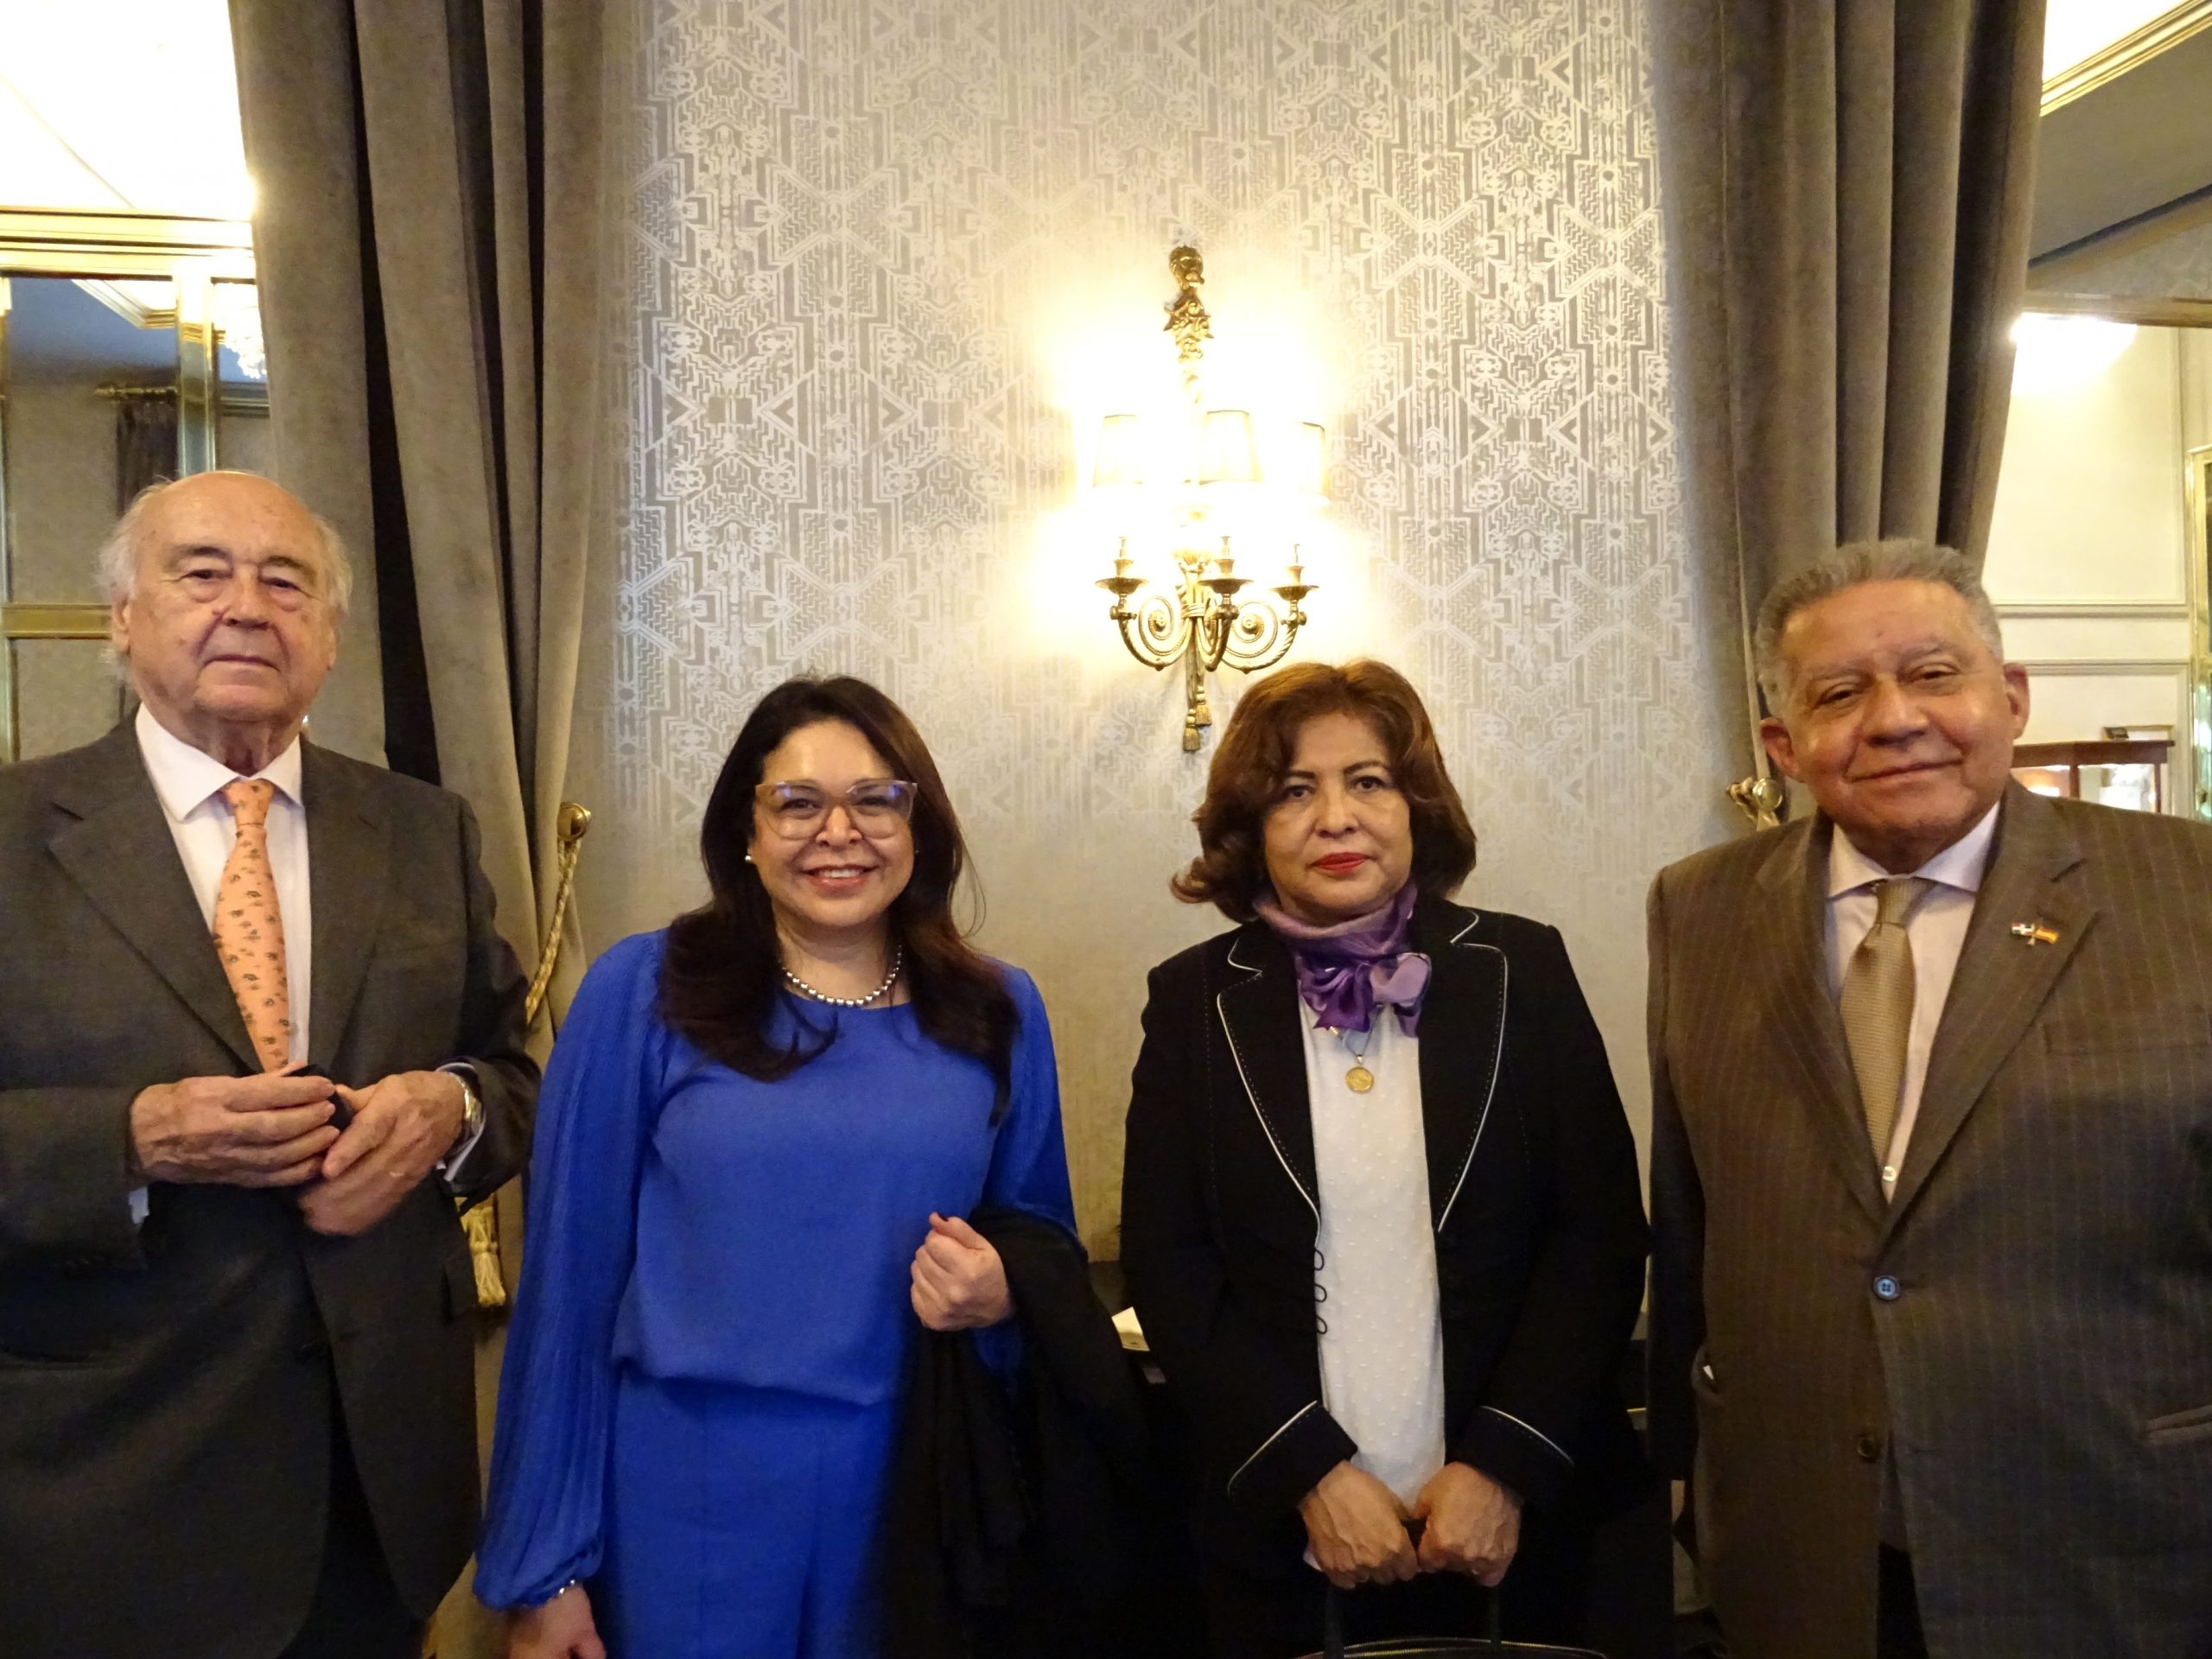 Miguel Vergara, Mónica Bolaños, Embajadora de Guatemala; Nardi Suxo, Embajadora de Bolivia y Juan Bolívar, Embajador de República Dominicana